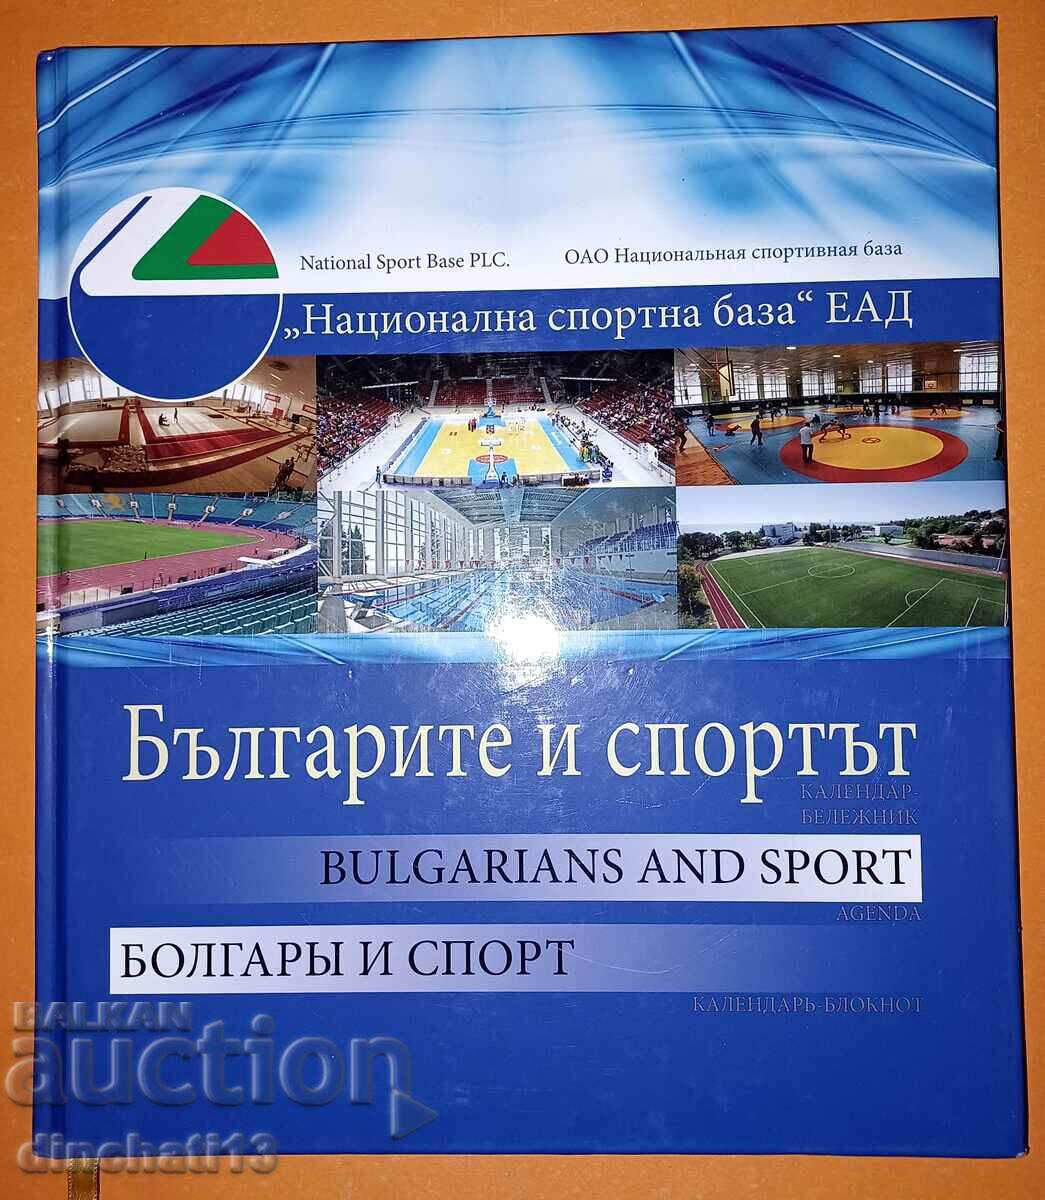 Българите и спортът / Bulgarians and Sport / Болгары и спорт